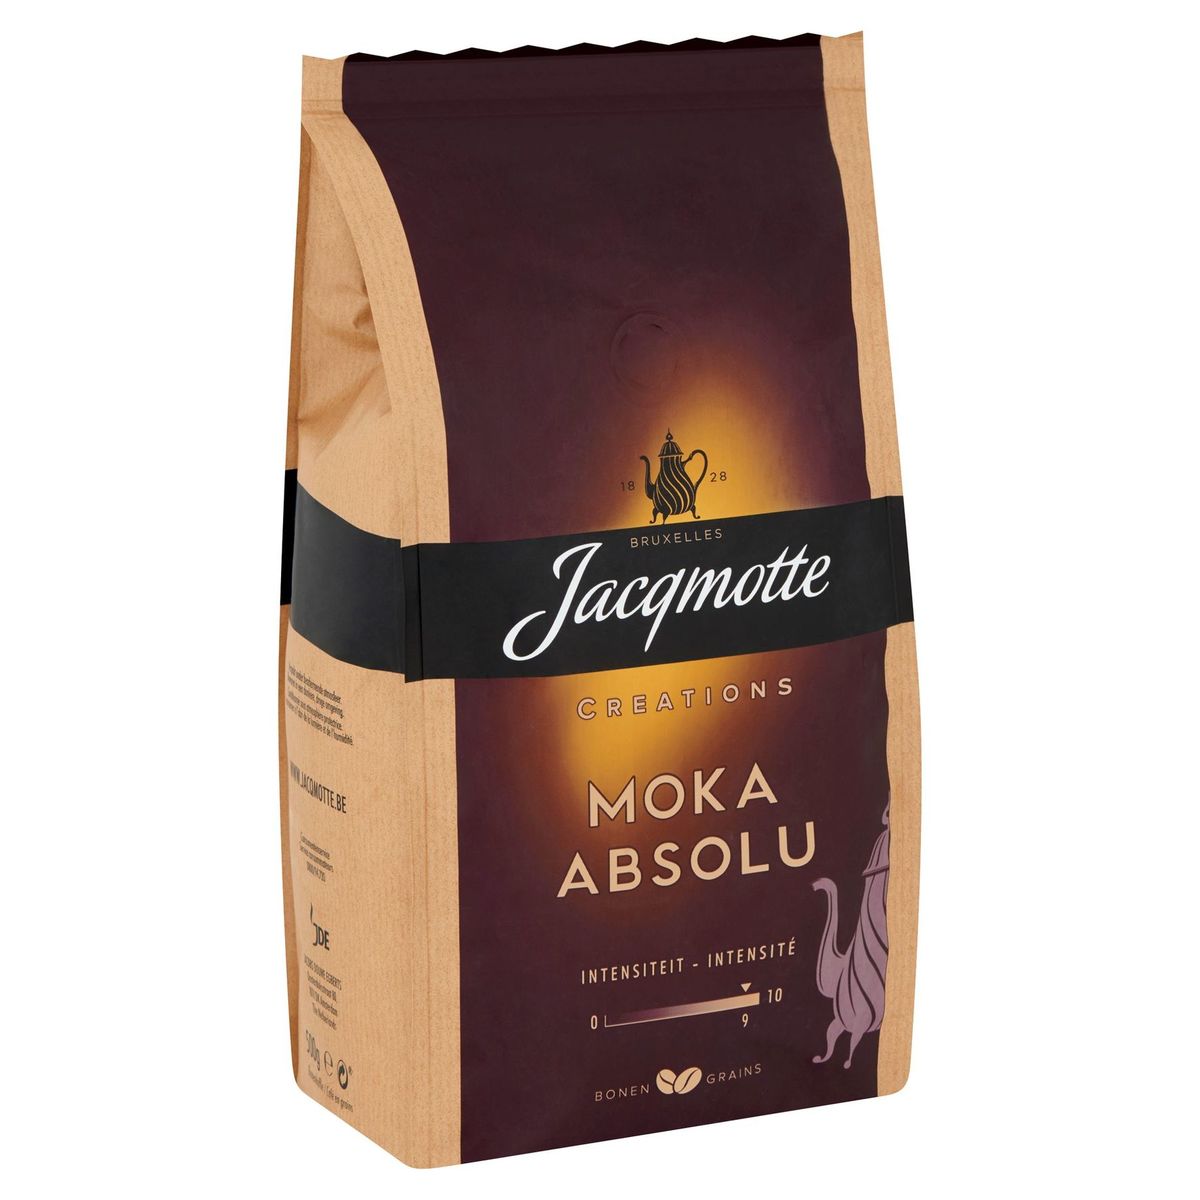 JACQMOTTE Koffie Bonen Moka Absolu 500g